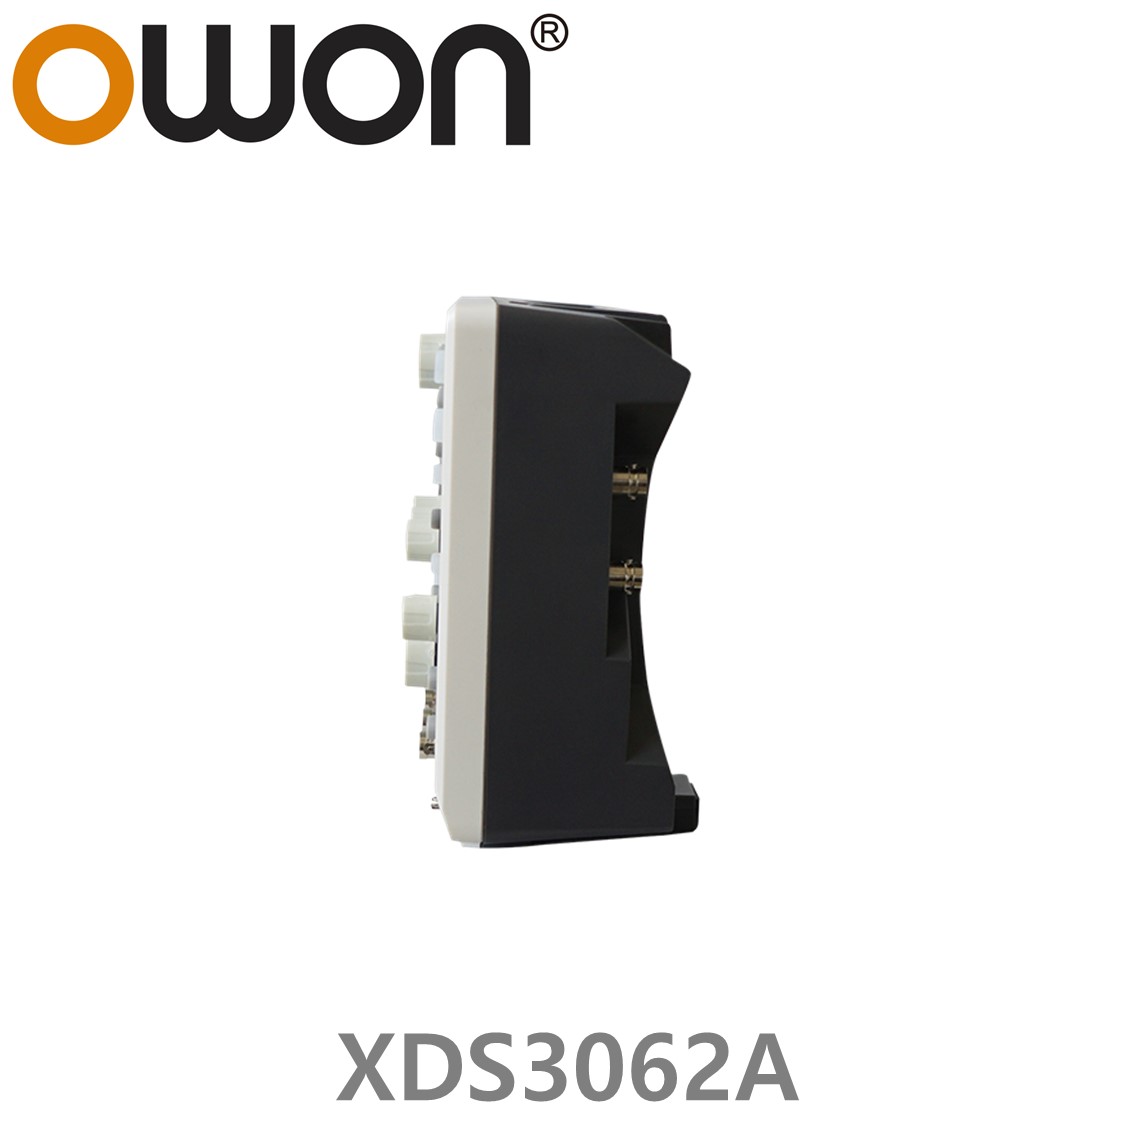 [ OWON ] XDS3062A 올인원 디지탈 오실로스코프 ( 60MHz, 2CH, 1GS/s, 데이타로깅, 멀티미터, 임의파형발생기 )